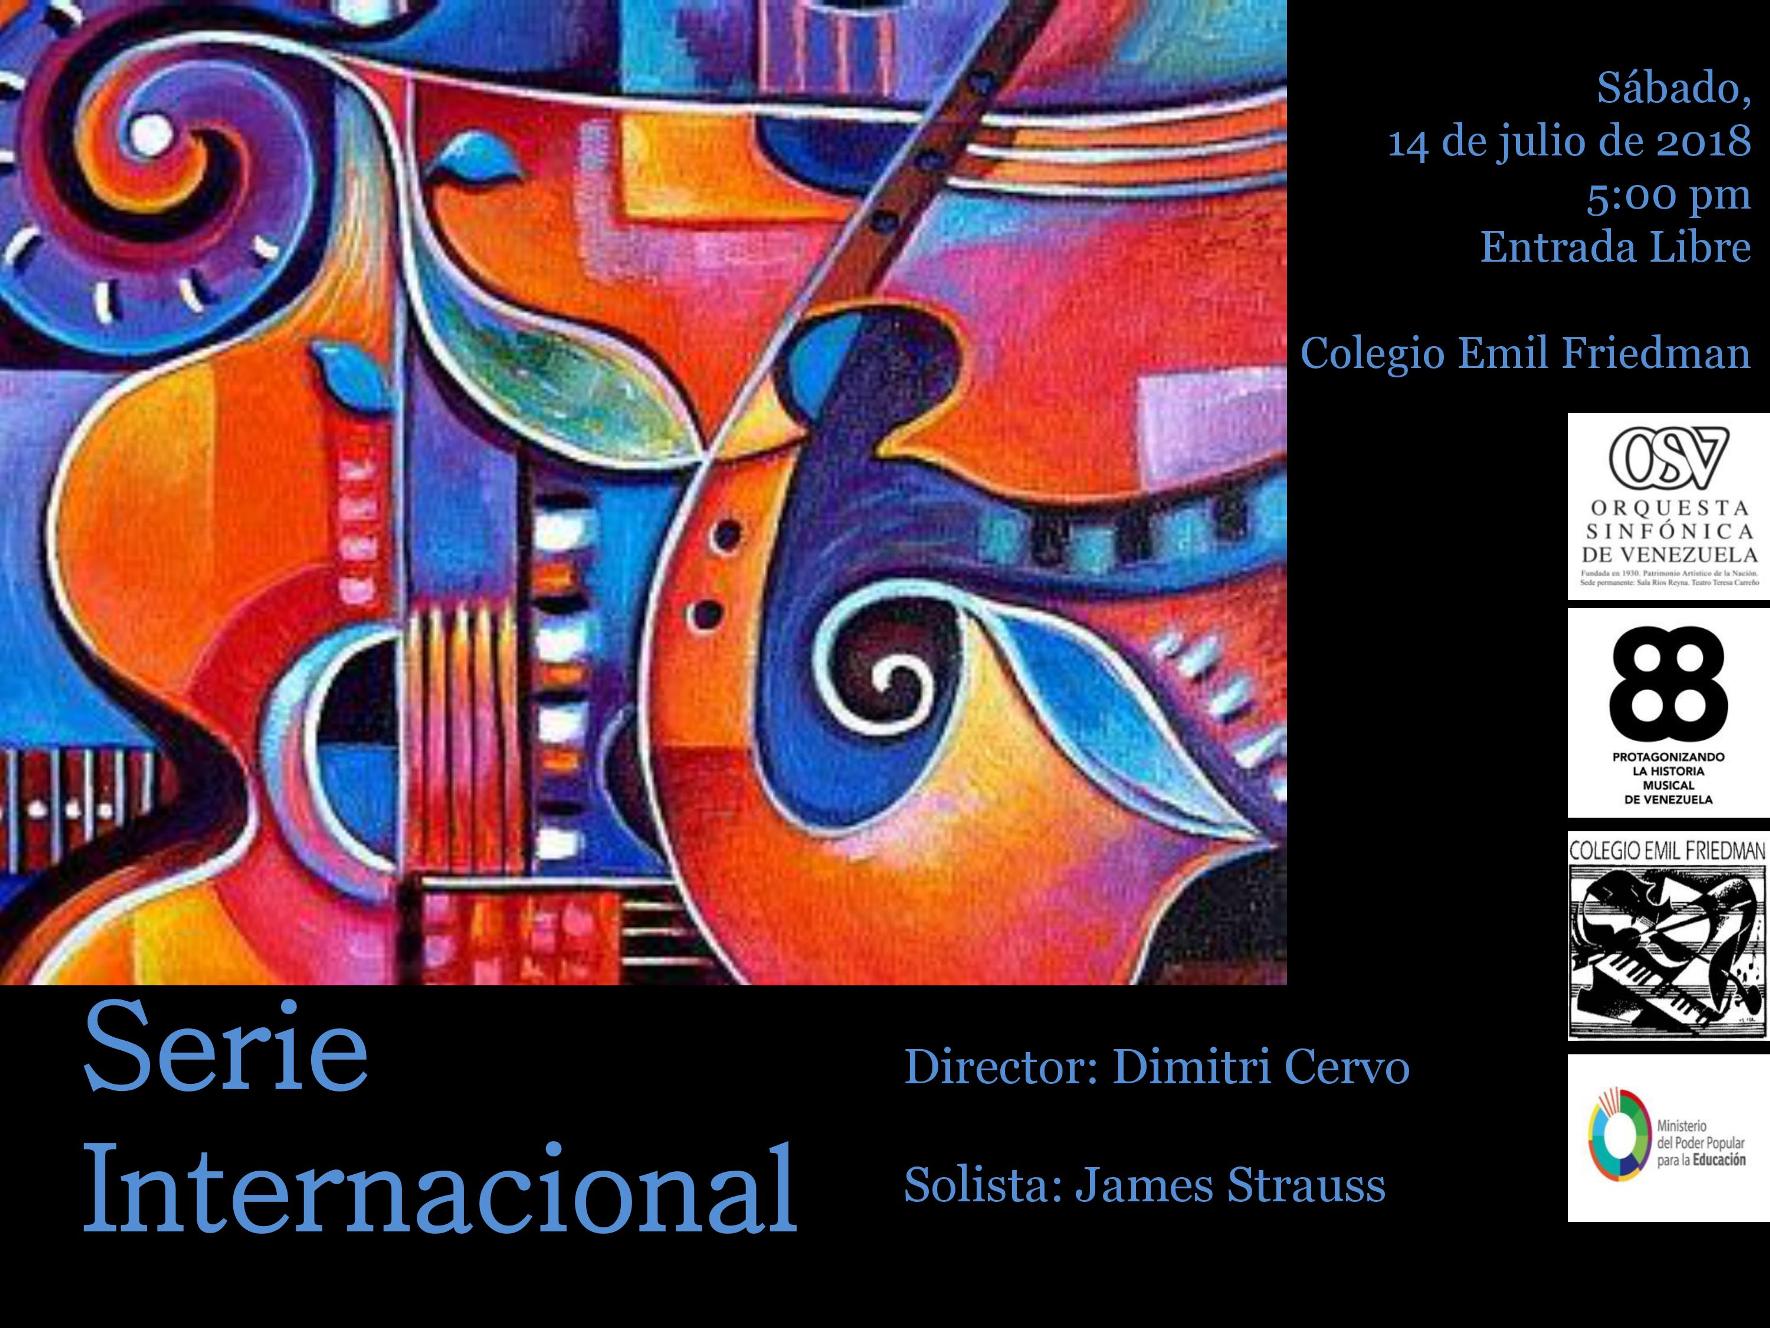 La Orquesta Sinfónica de Venezuela interpretará música brasilera dentro del marco de su «Serie Internacional»